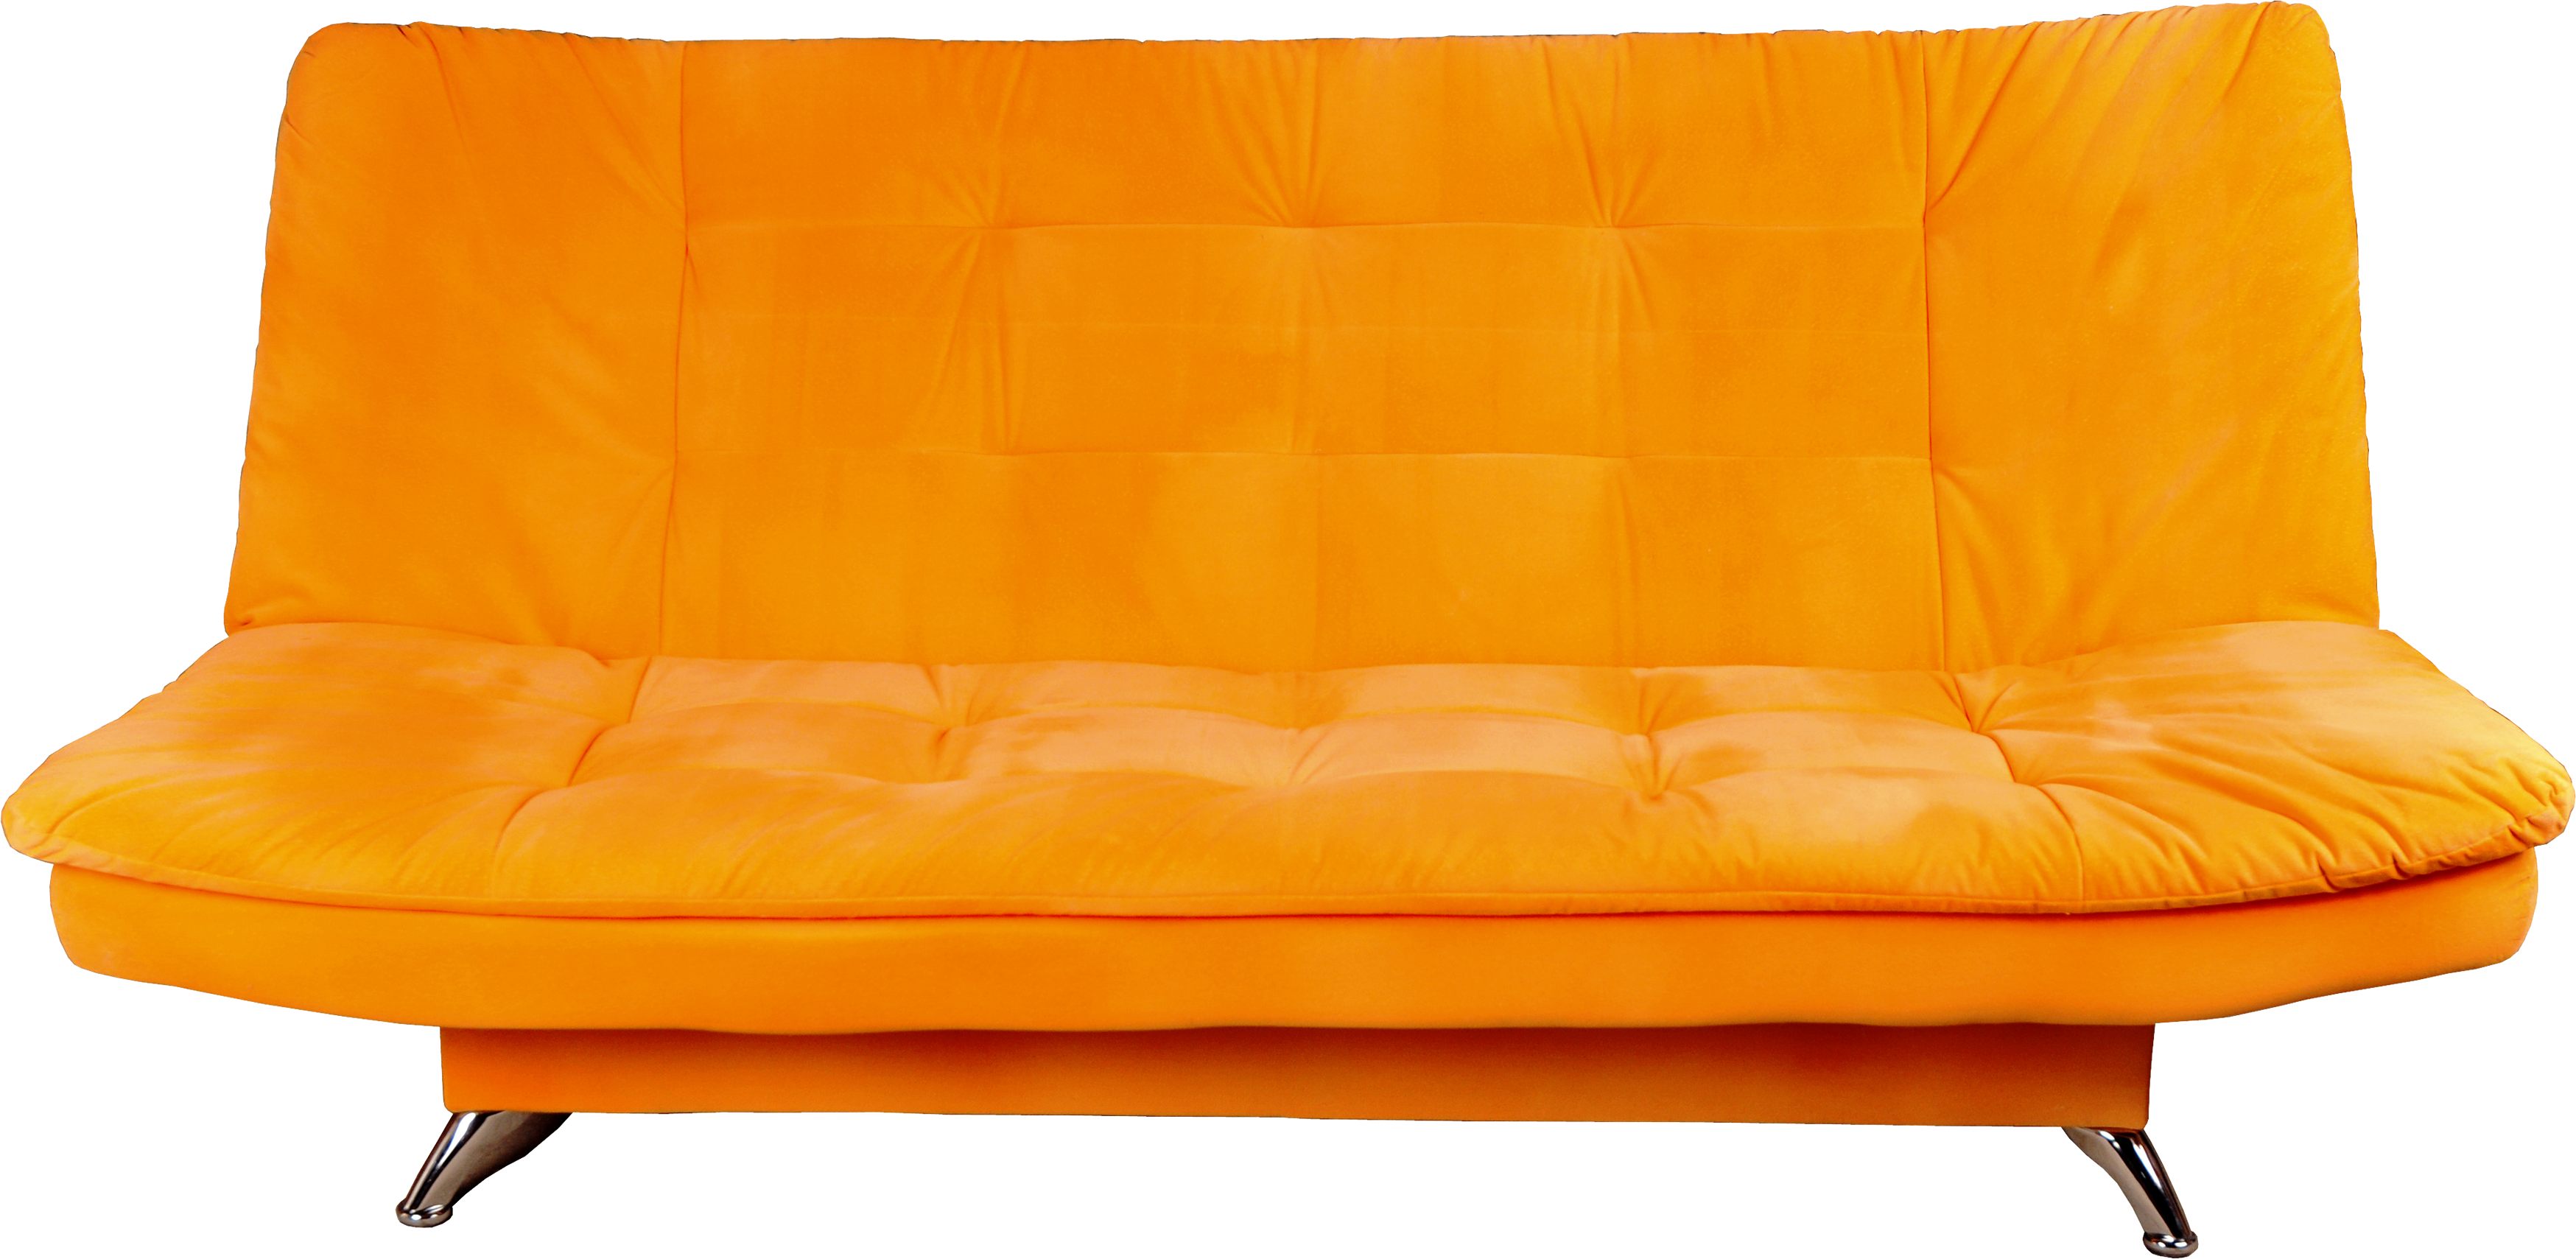 Sofa oranye